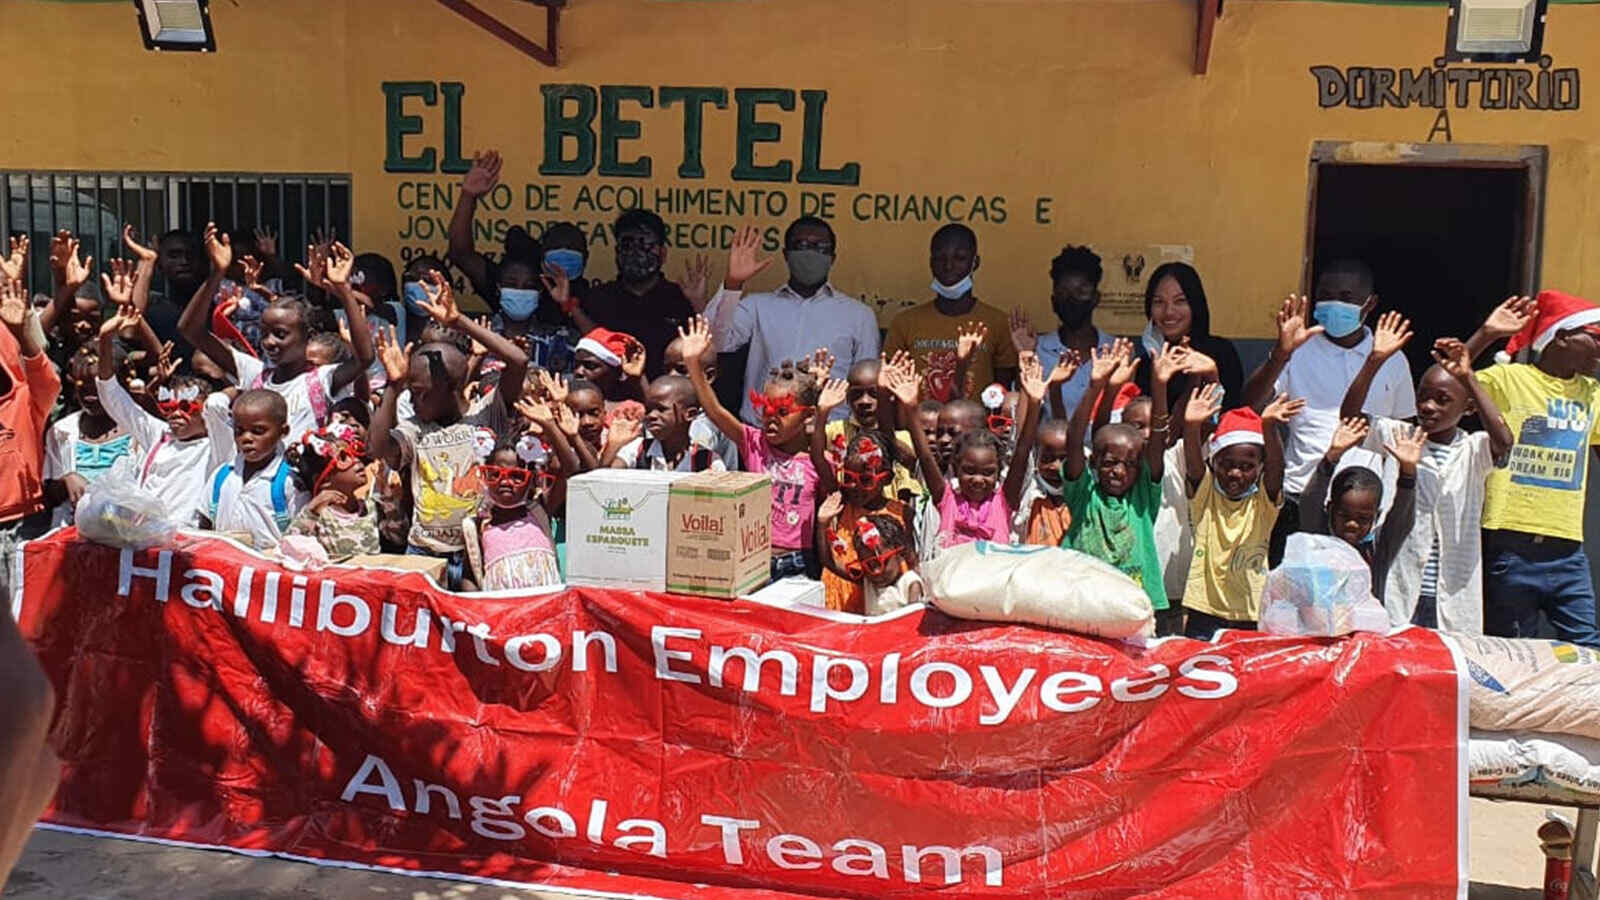 Centro de Acolhimento El Betel orphanage in Angola